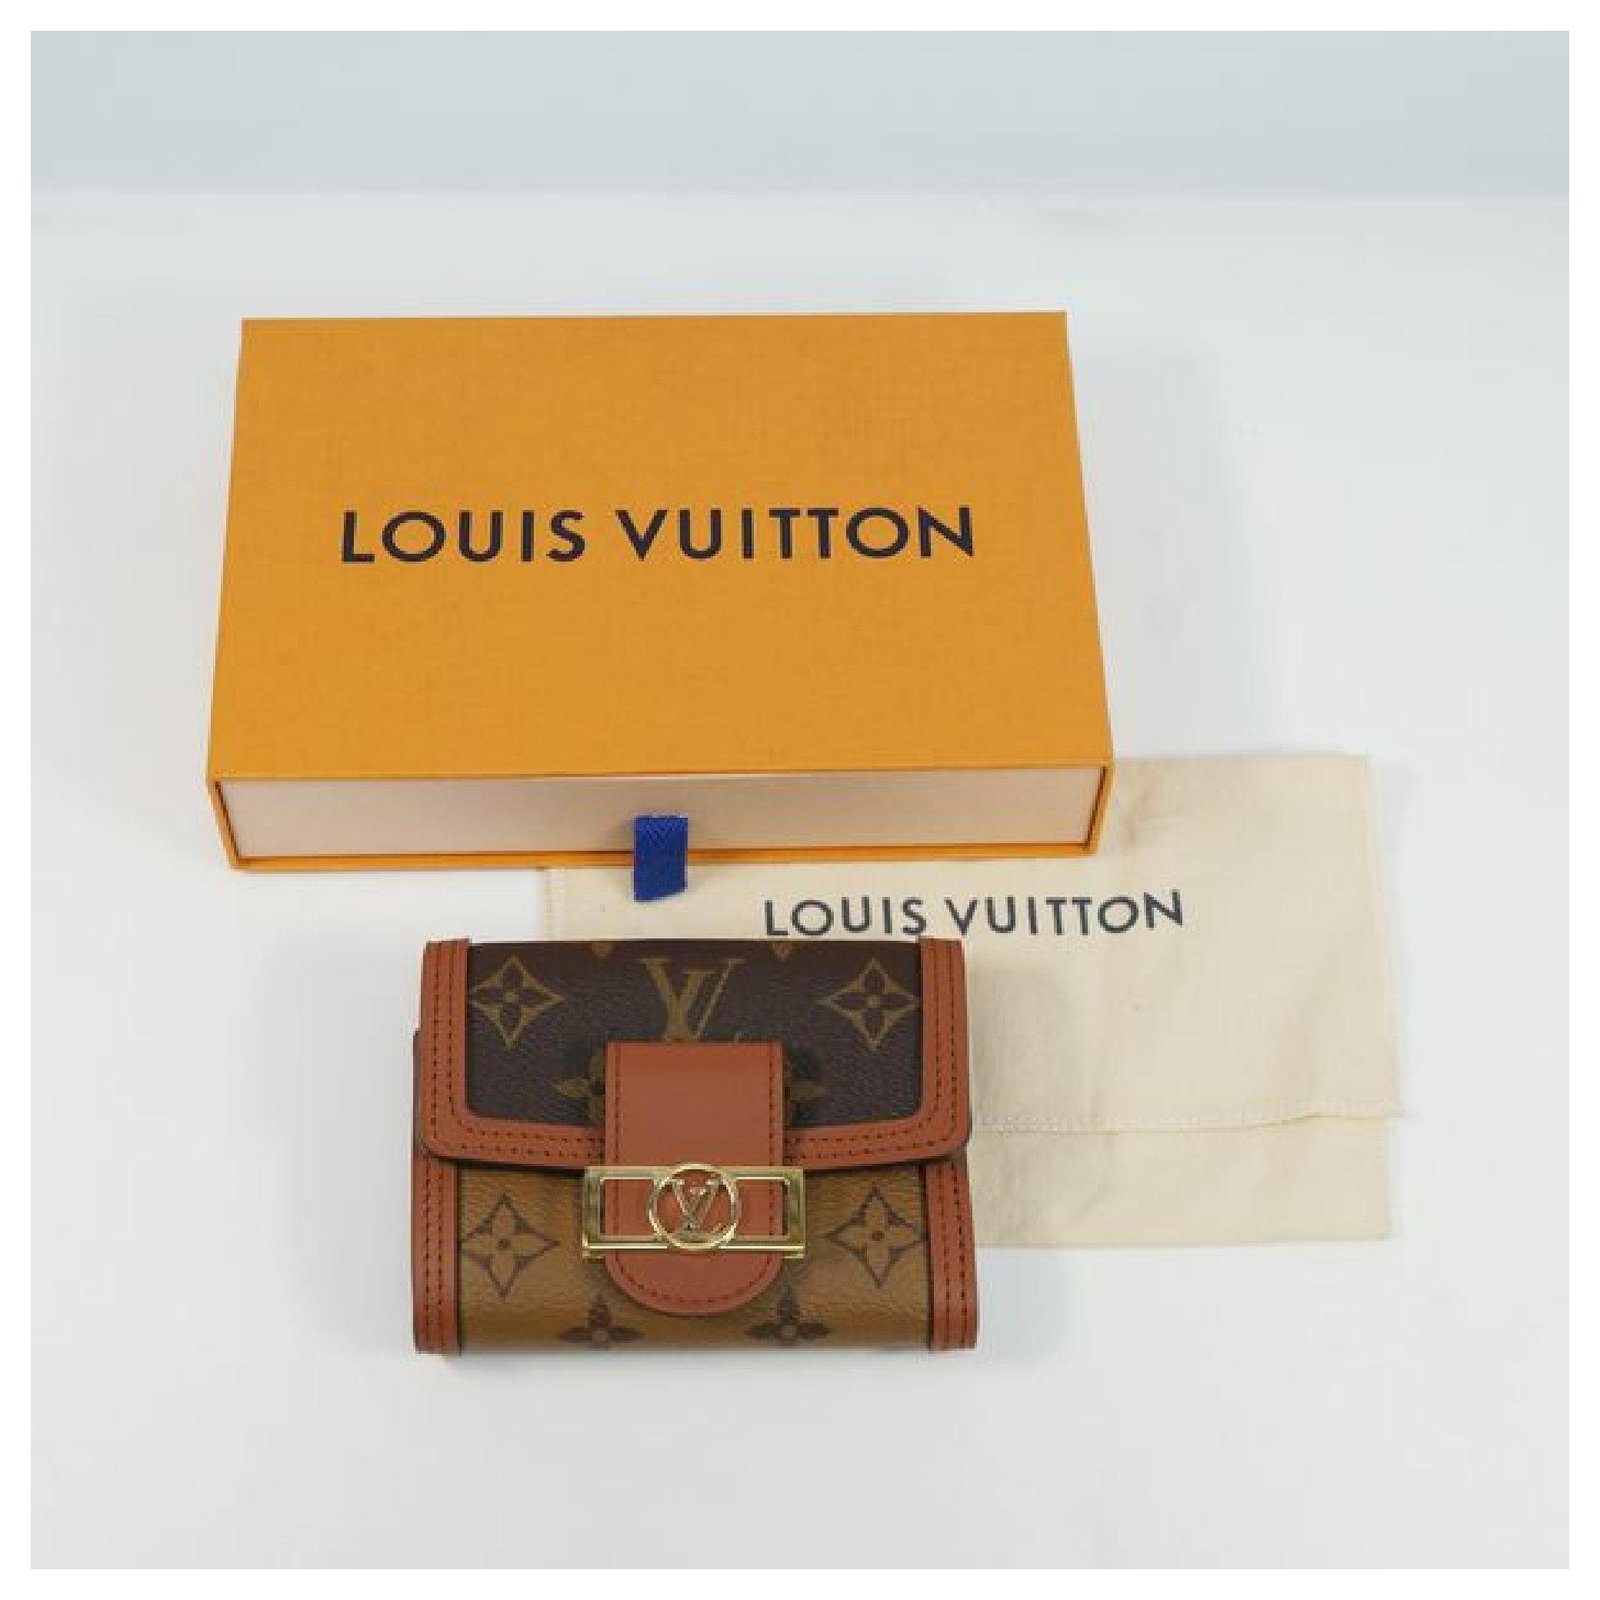 Authentic LOUIS VUITTON Monogram portefeuille Dauphine Compact M68725  Wallet